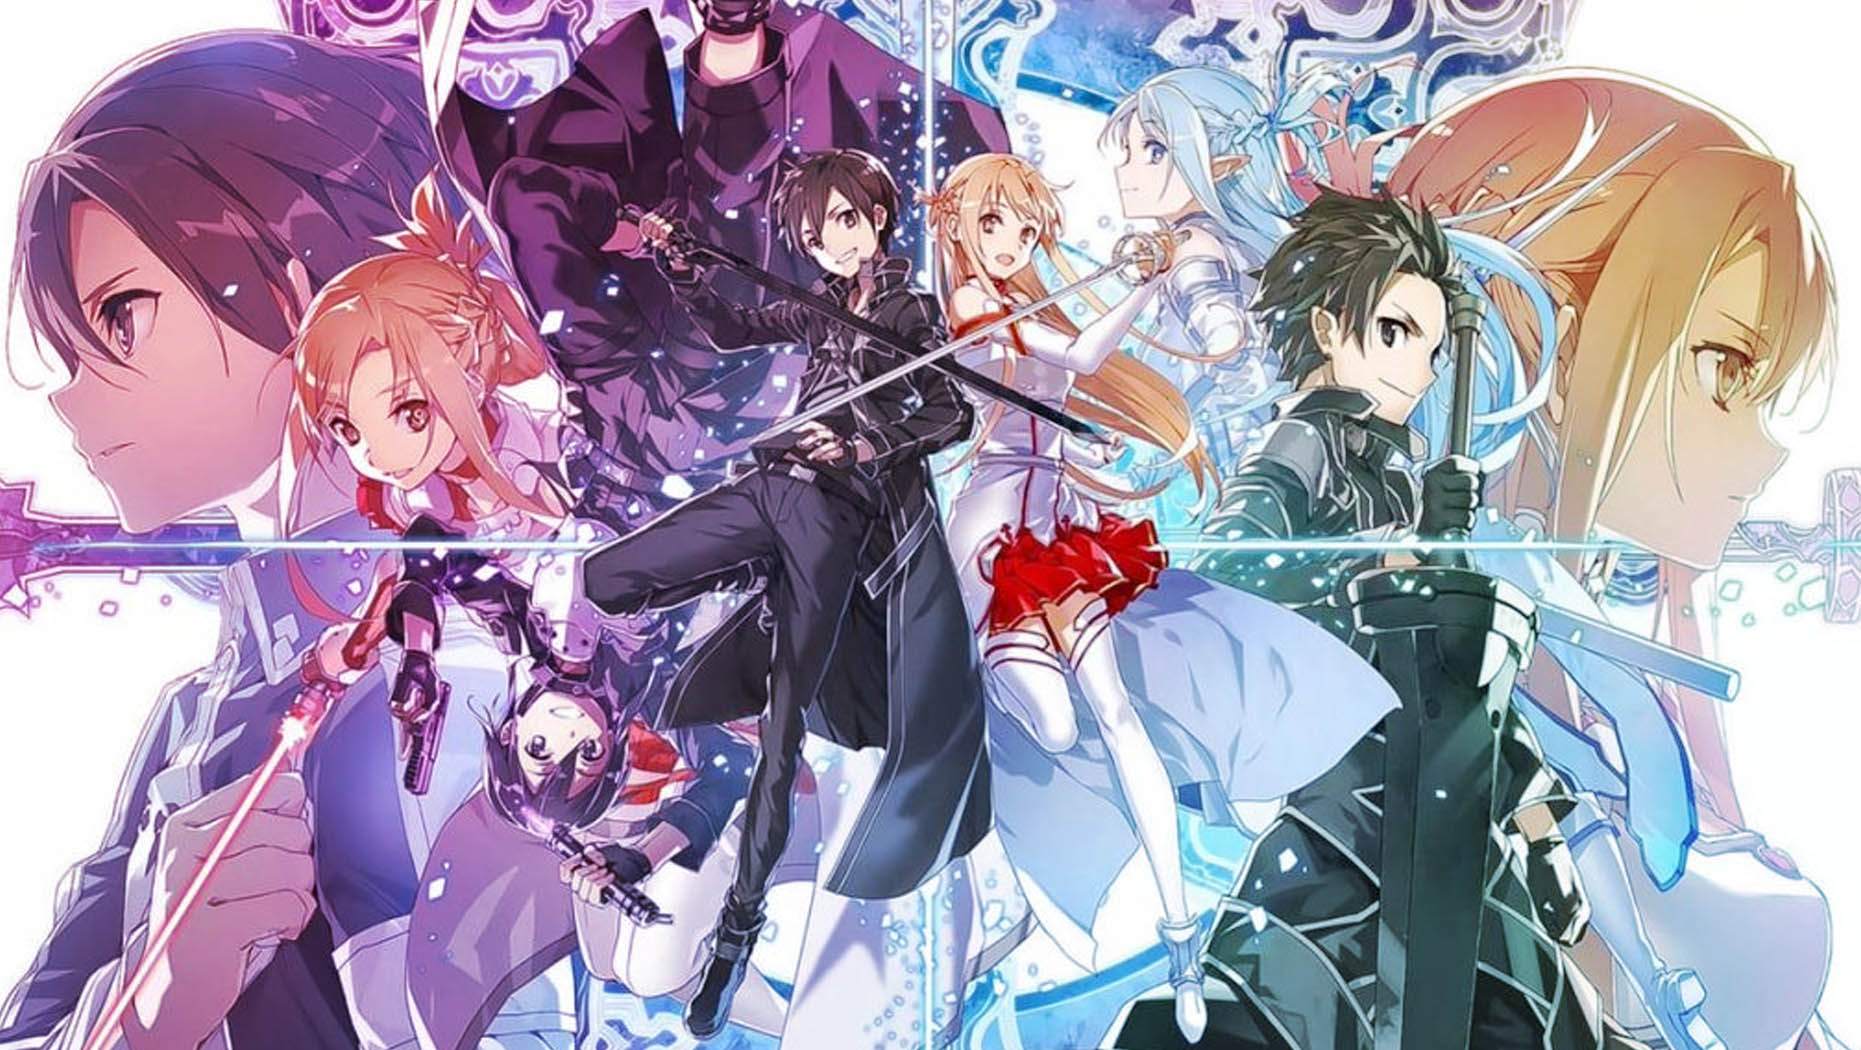 Online 4 date art sword season release SAO Season